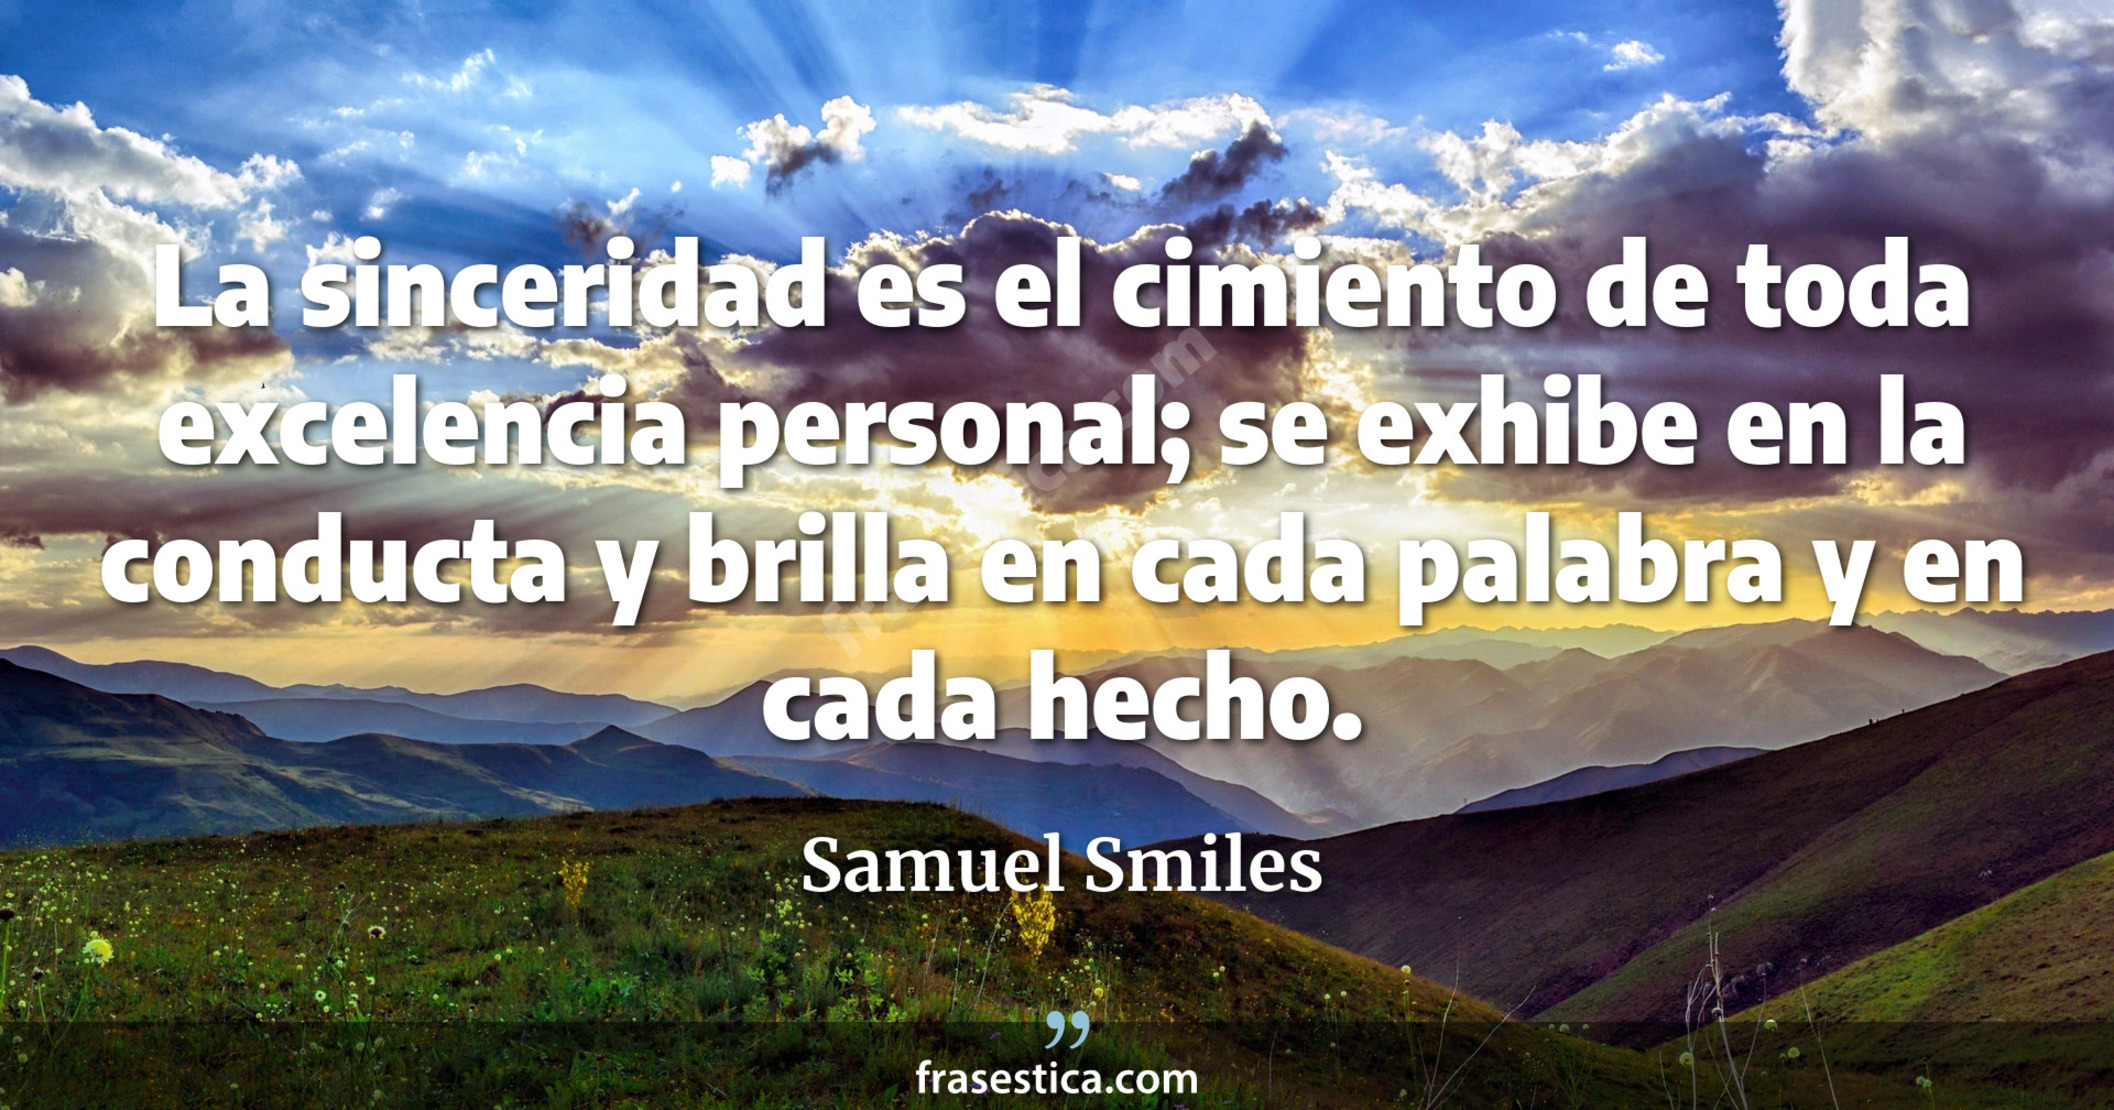 La sinceridad es el cimiento de toda excelencia personal; se exhibe en la conducta y brilla en cada palabra y en cada hecho. - Samuel Smiles